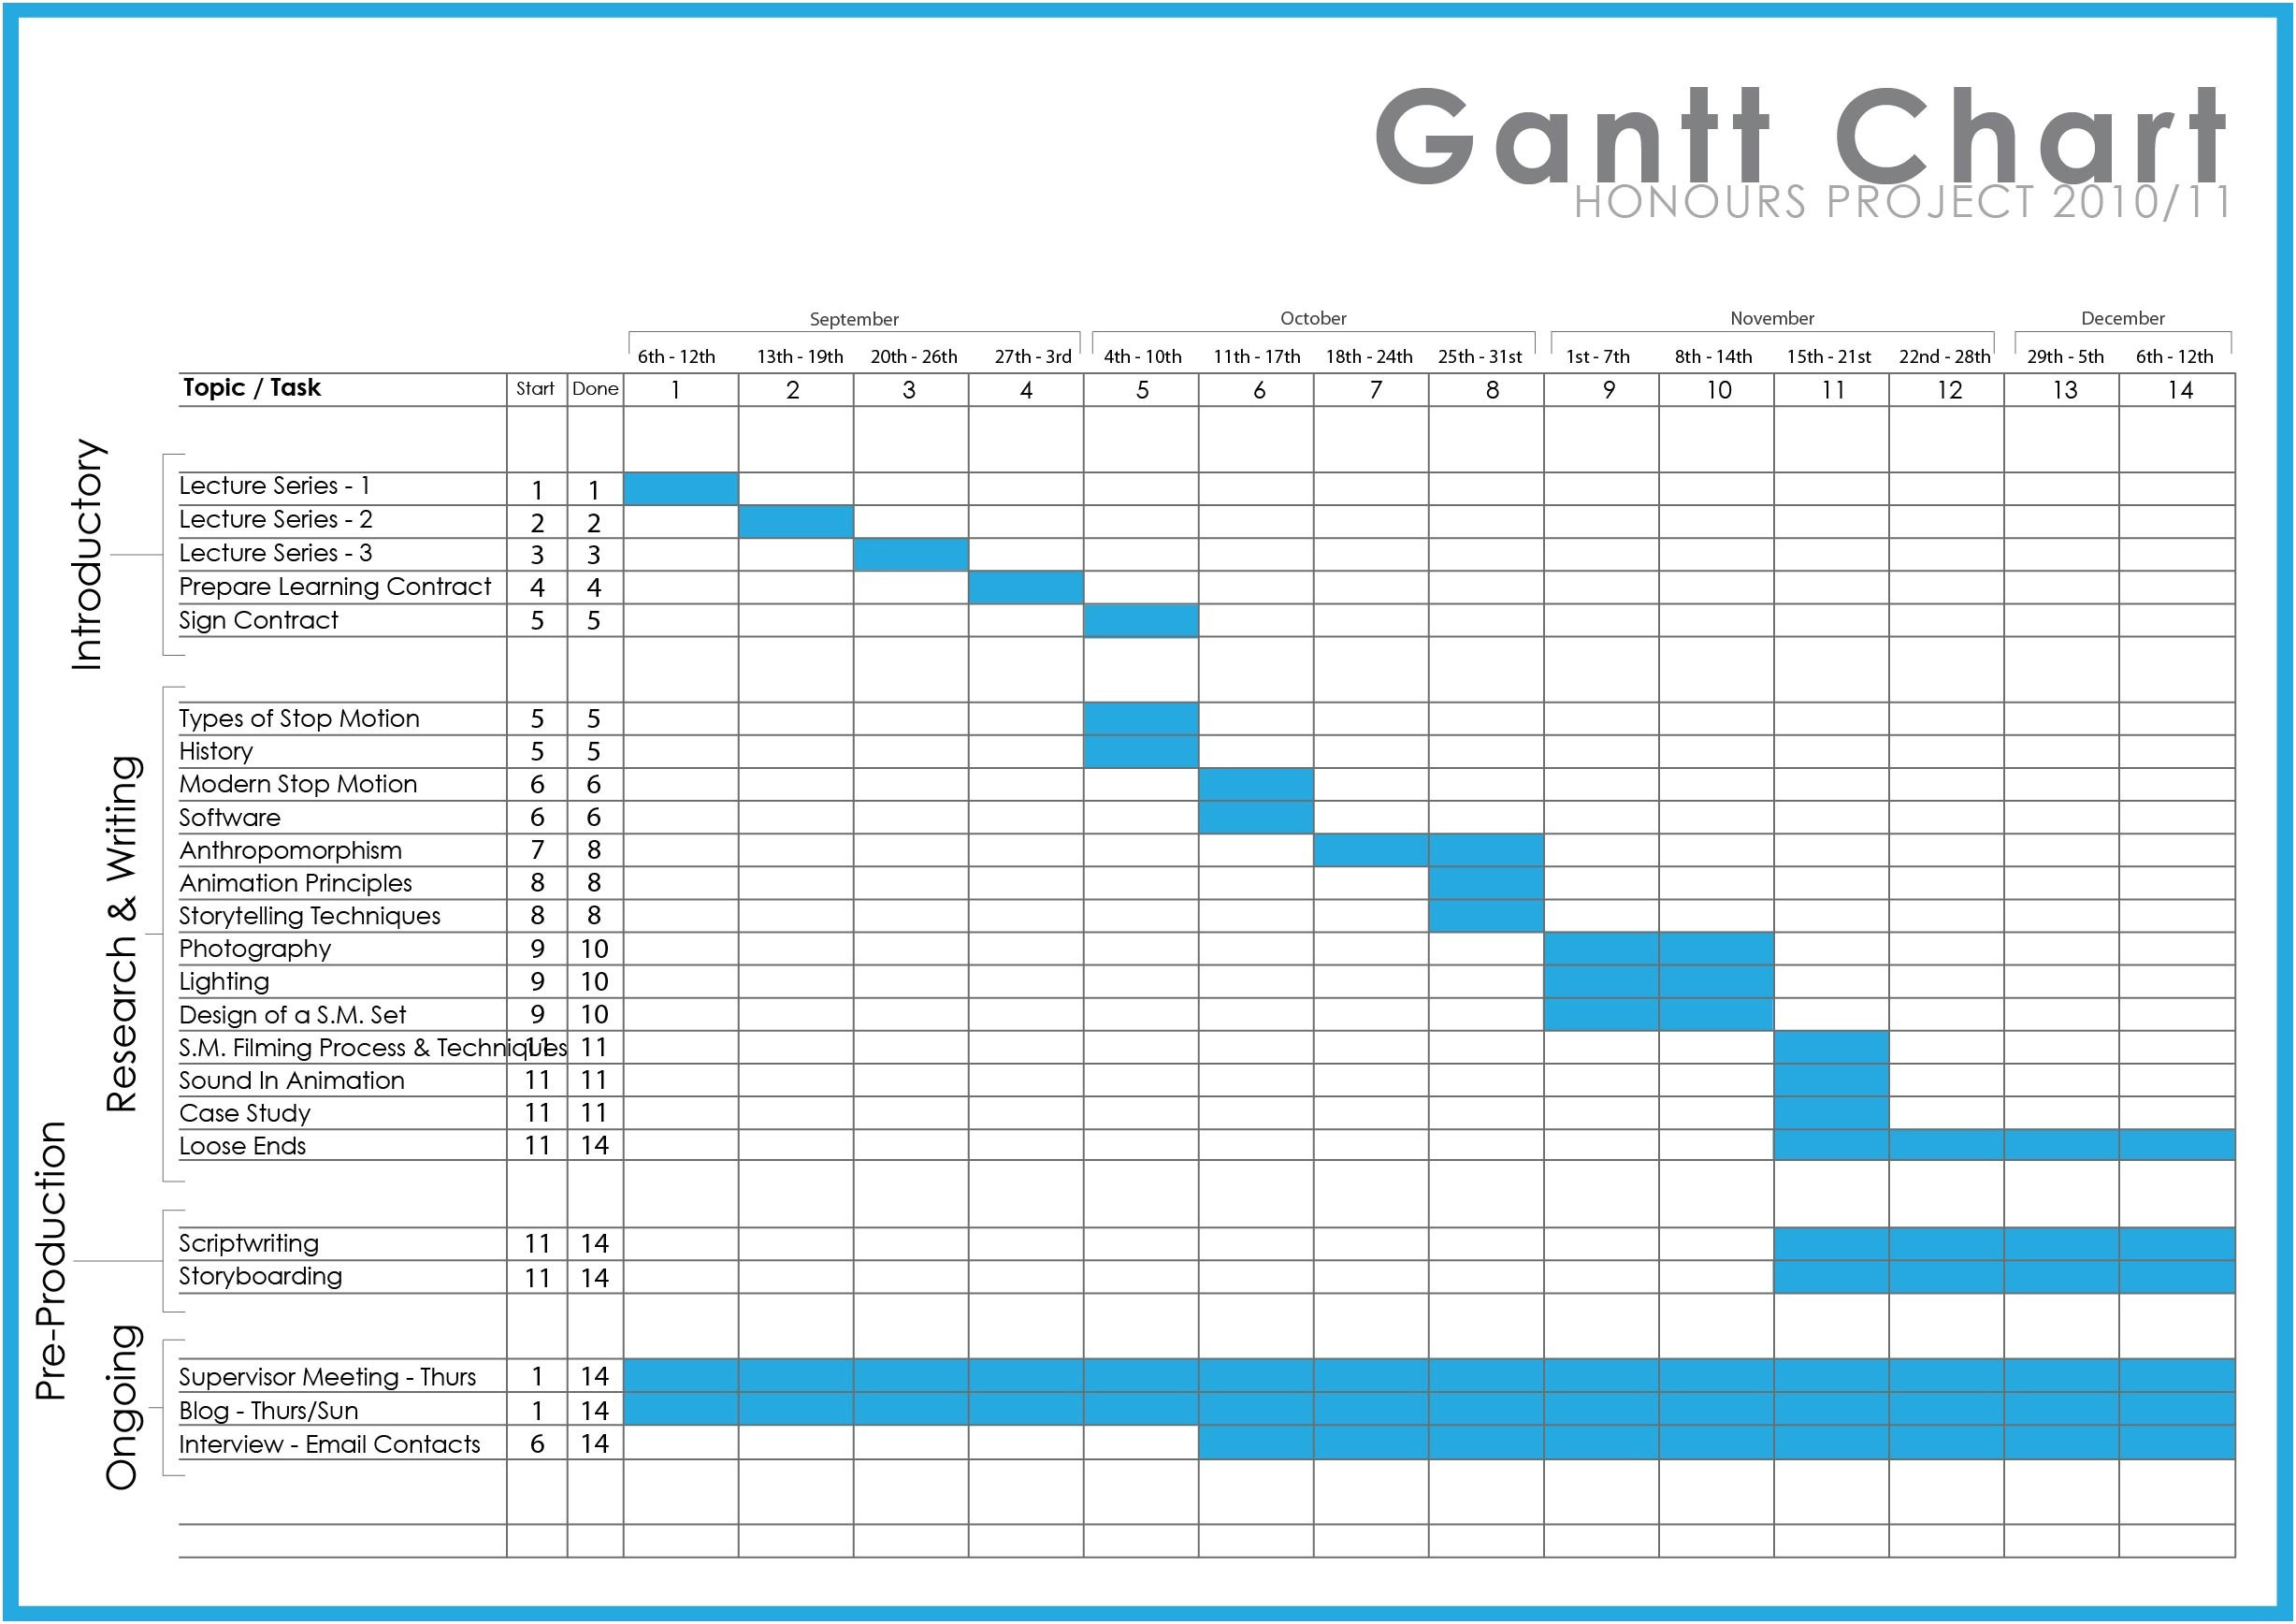 Gantt Diagramm Excel Oder Gantt Chart Template Word Business Inside Gantt Chart Template Word